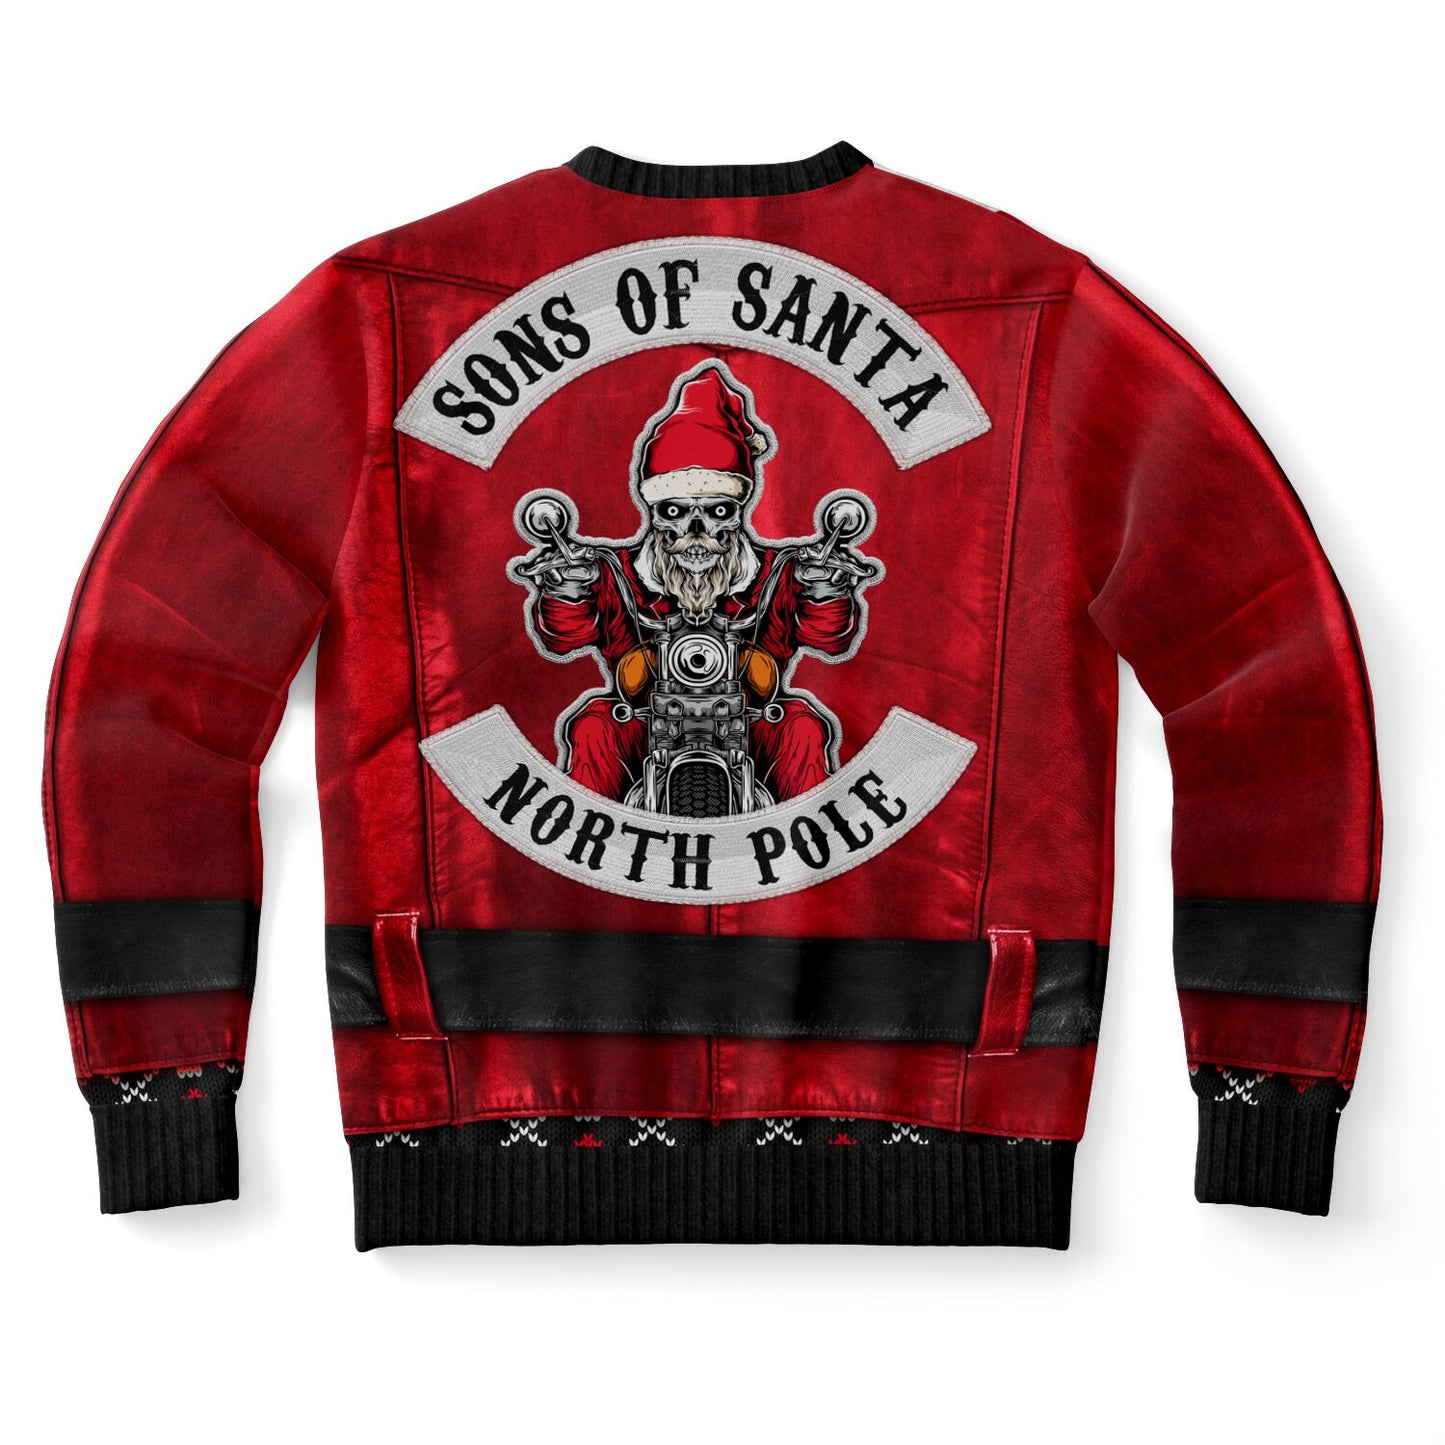 Bad Santa's Jacket Sweatshirt